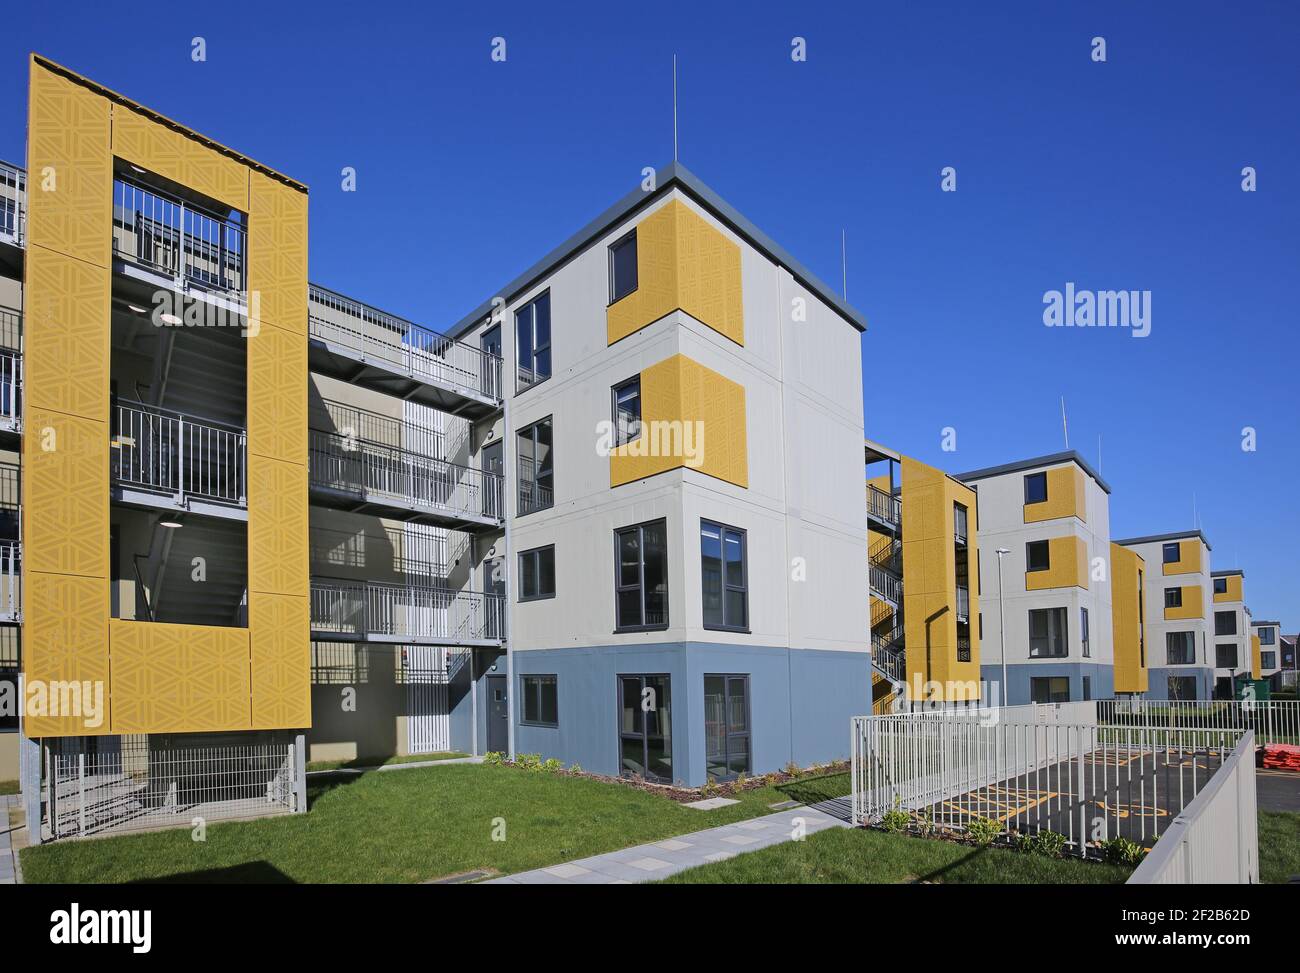 Neue Wohnsiedlung in Dagenham, London, Großbritannien. Schnell und günstig gebaut mit modularen Aufbau, um Unterkunft für Obdachlose bieten. Stockfoto